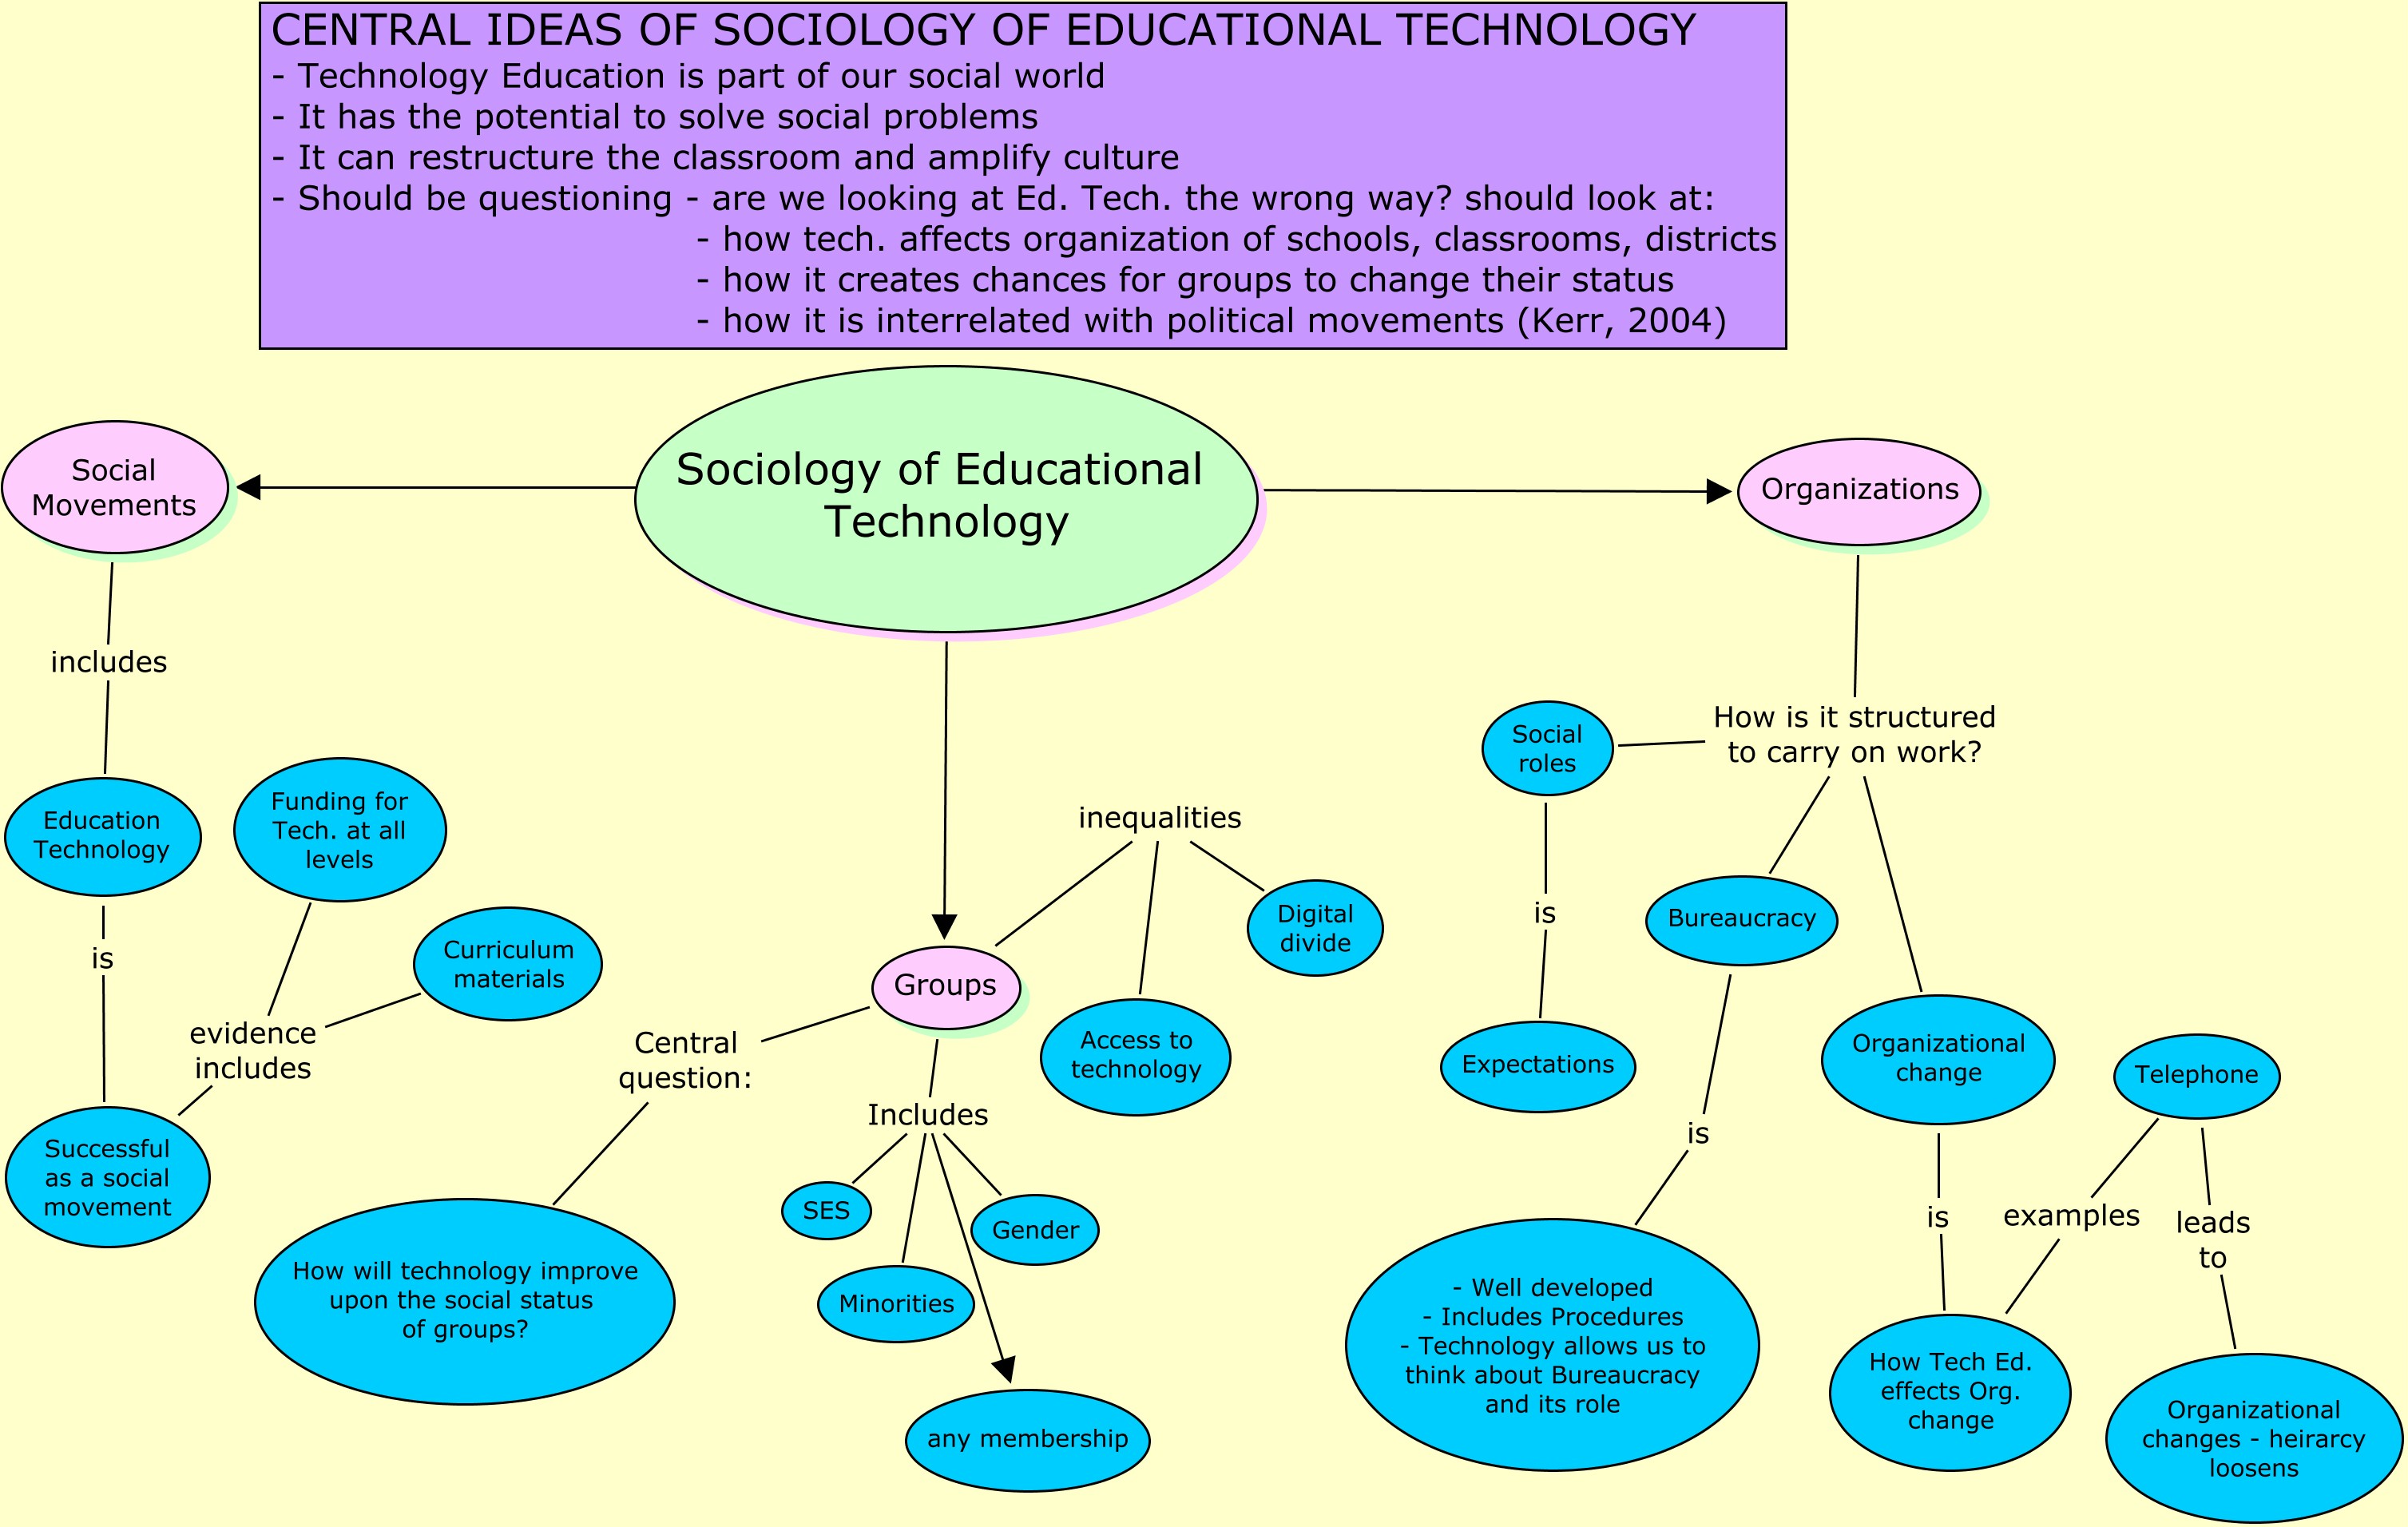 Etec 511 E Portfolio Concept Map For Sociology Of Educational